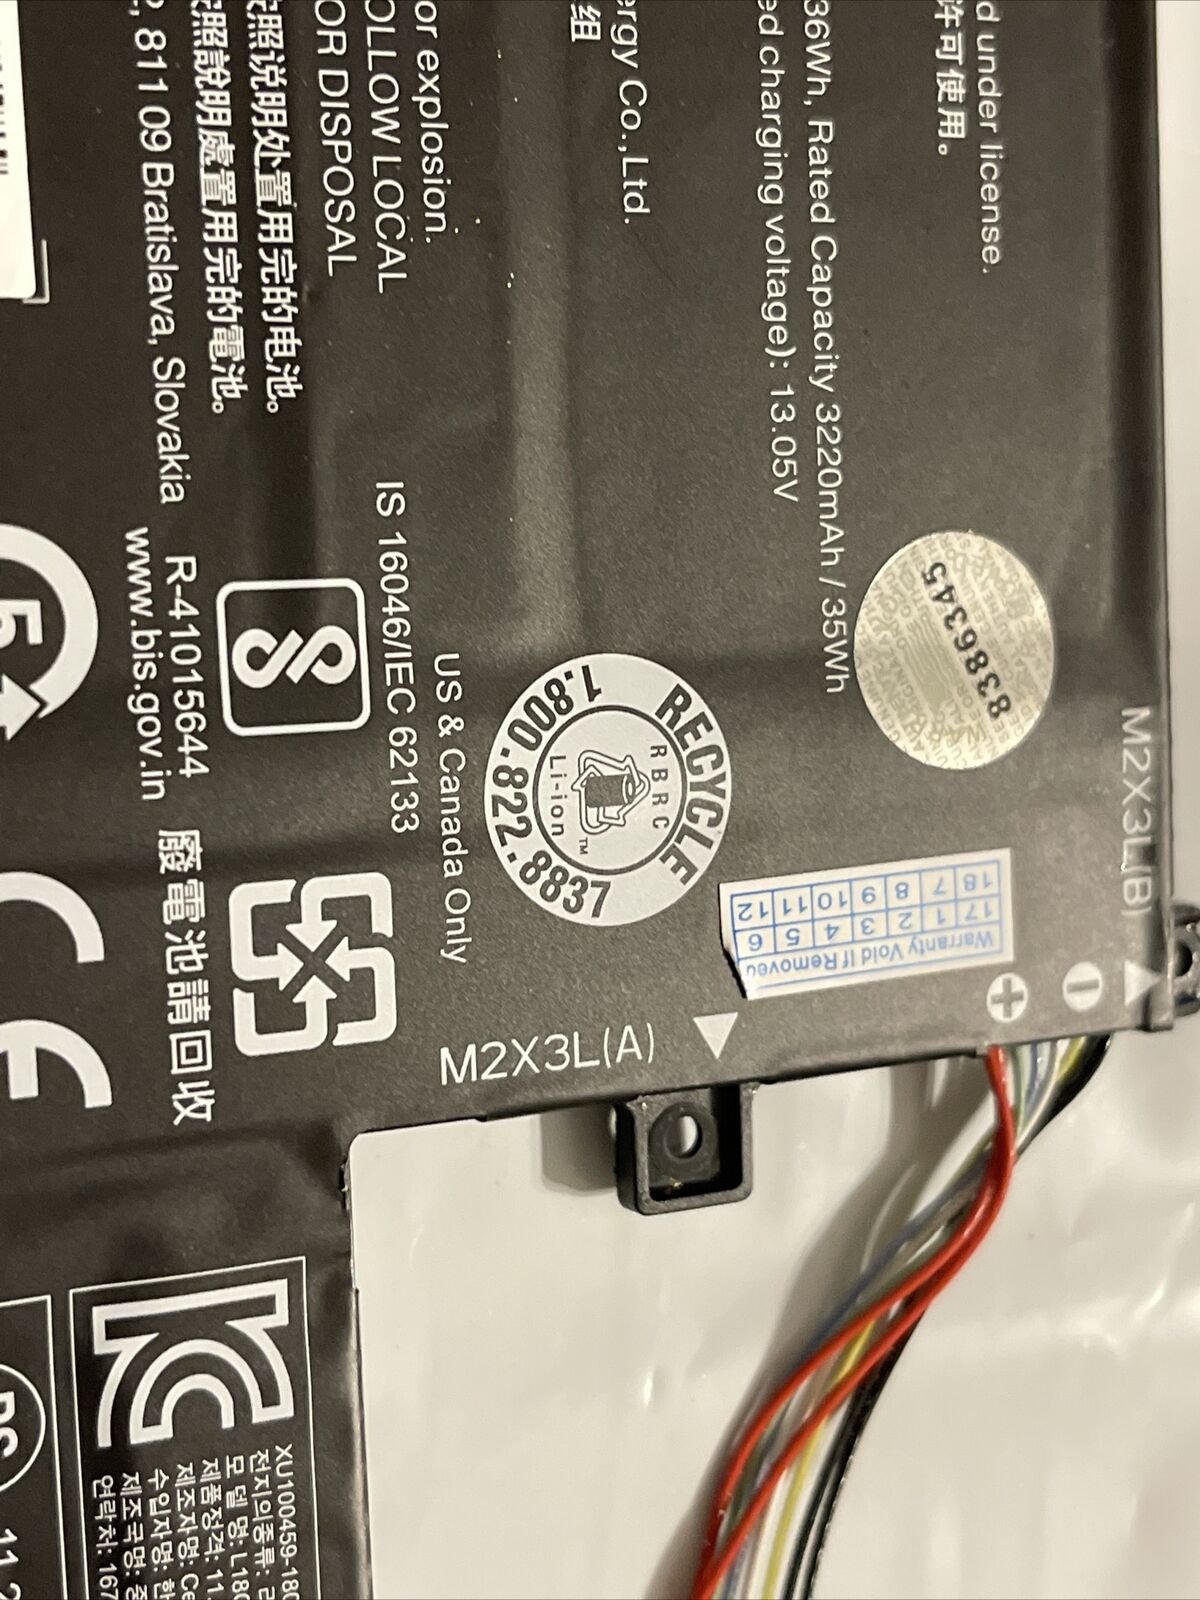 Lenovo IdeaPad 15.6 S340-15IWL Battery 11.25V 36Wh 5B10T09092 L18C3PF6 ata X7